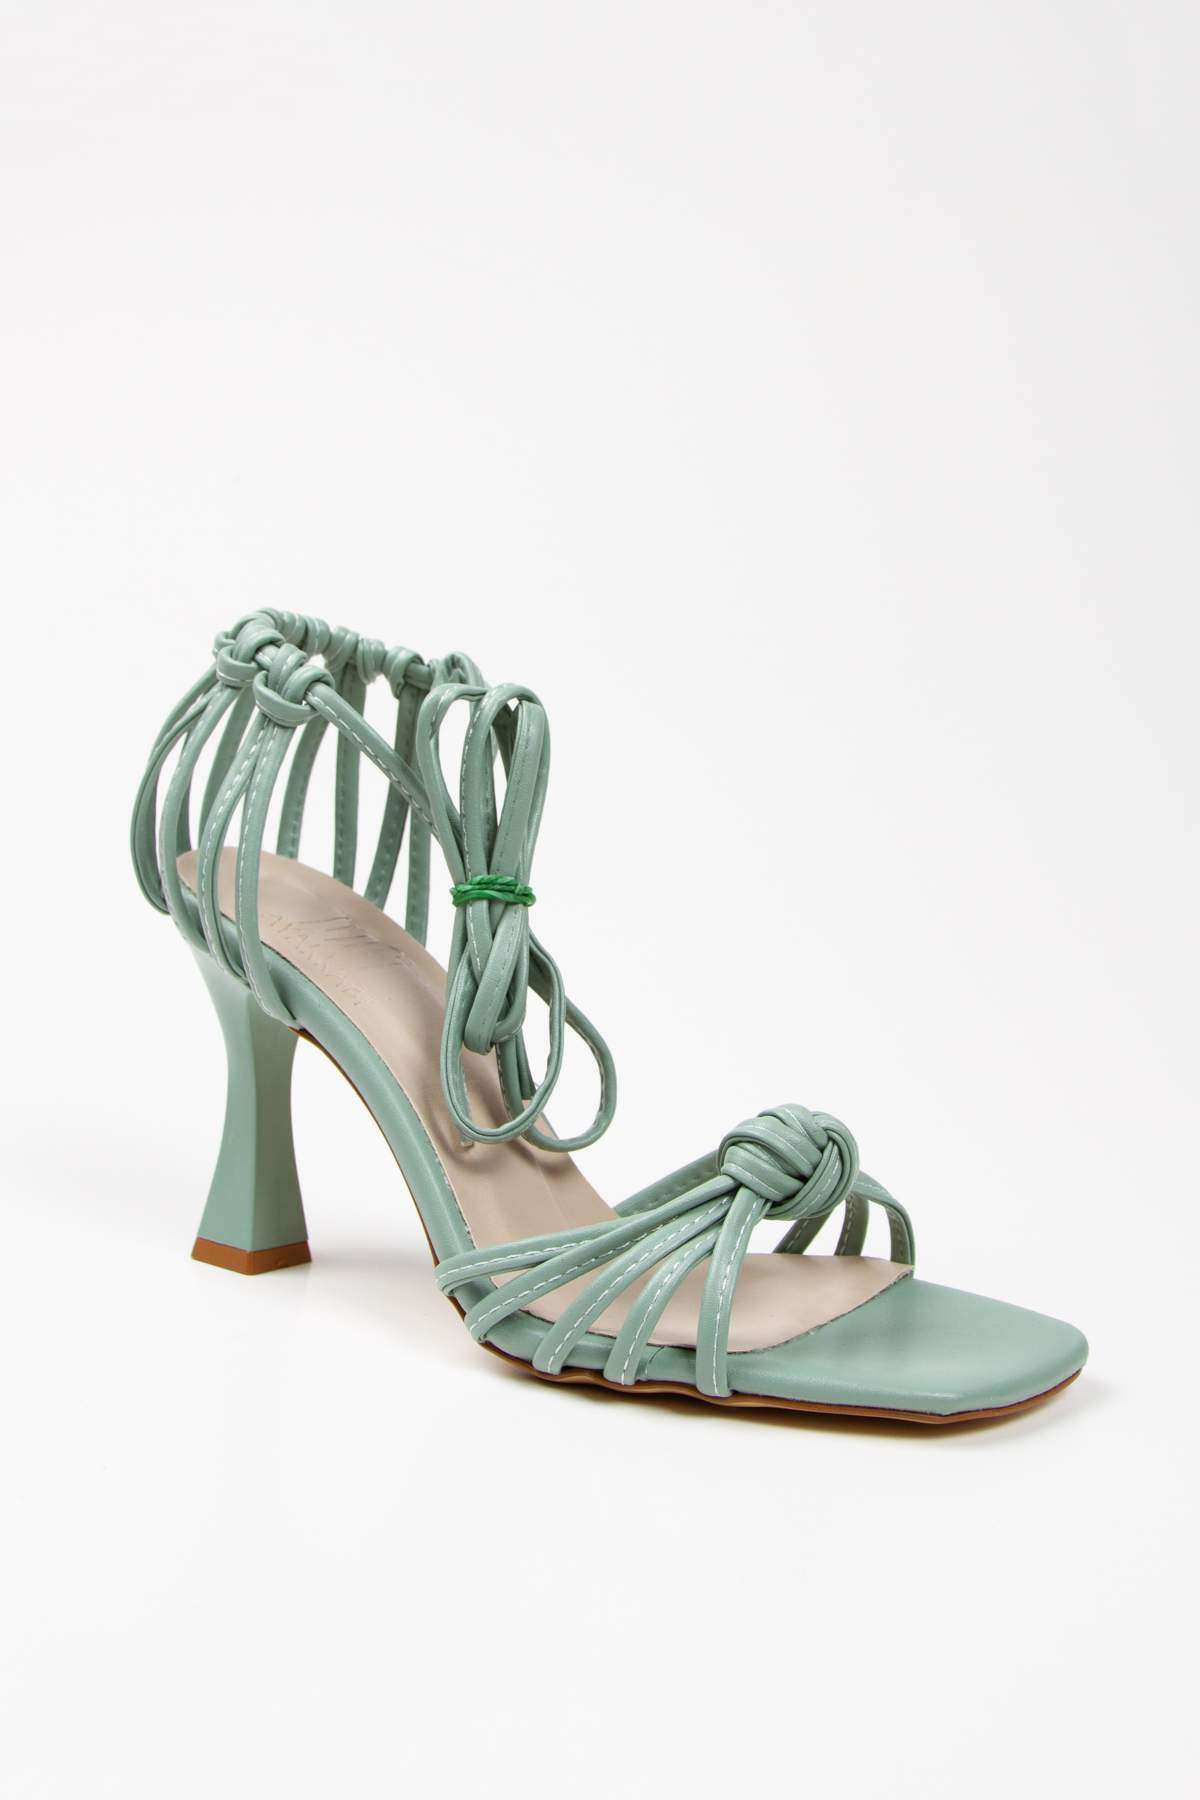 Kadın Yeşil Yazlık Örgülü Topuklu Ayakkabı